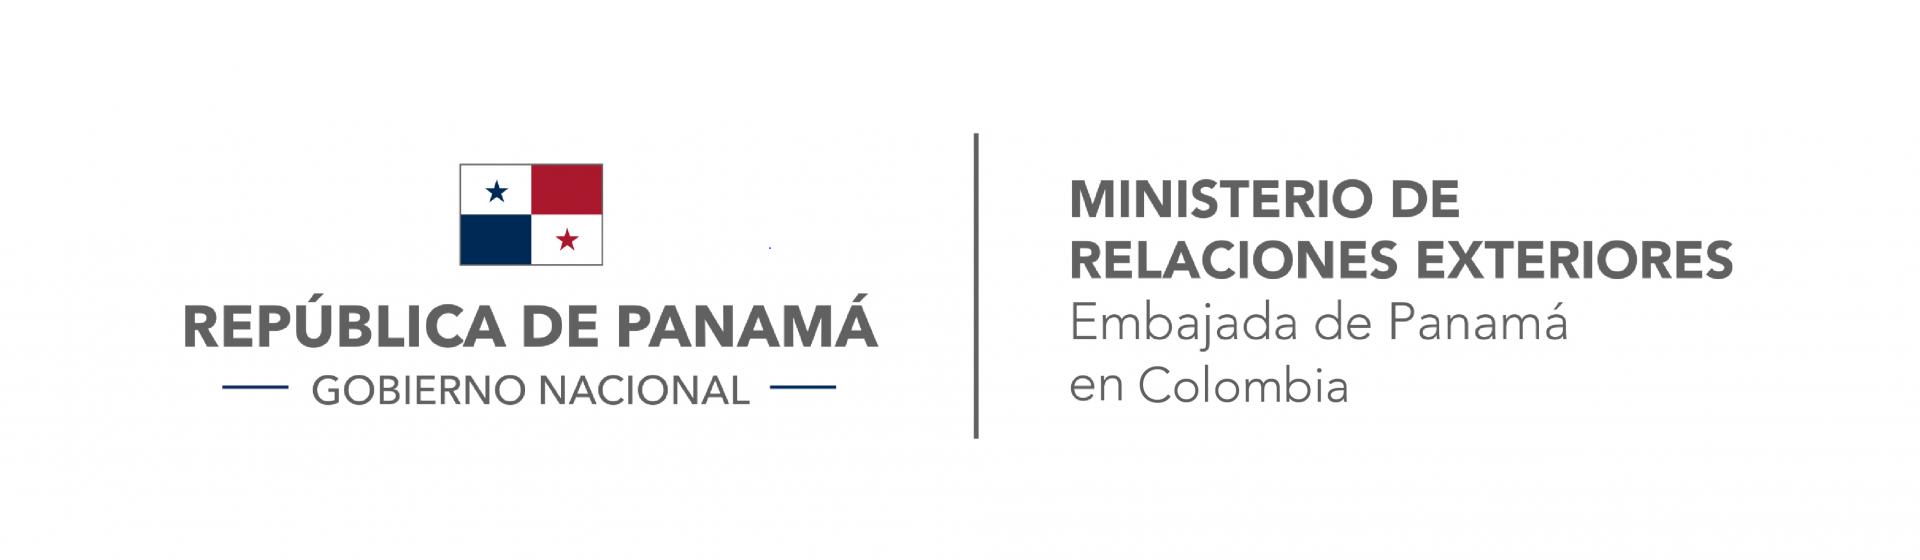 Acercamiento desde la embajada de Panamá para estrechar relaciones con la Universidad de los Andes